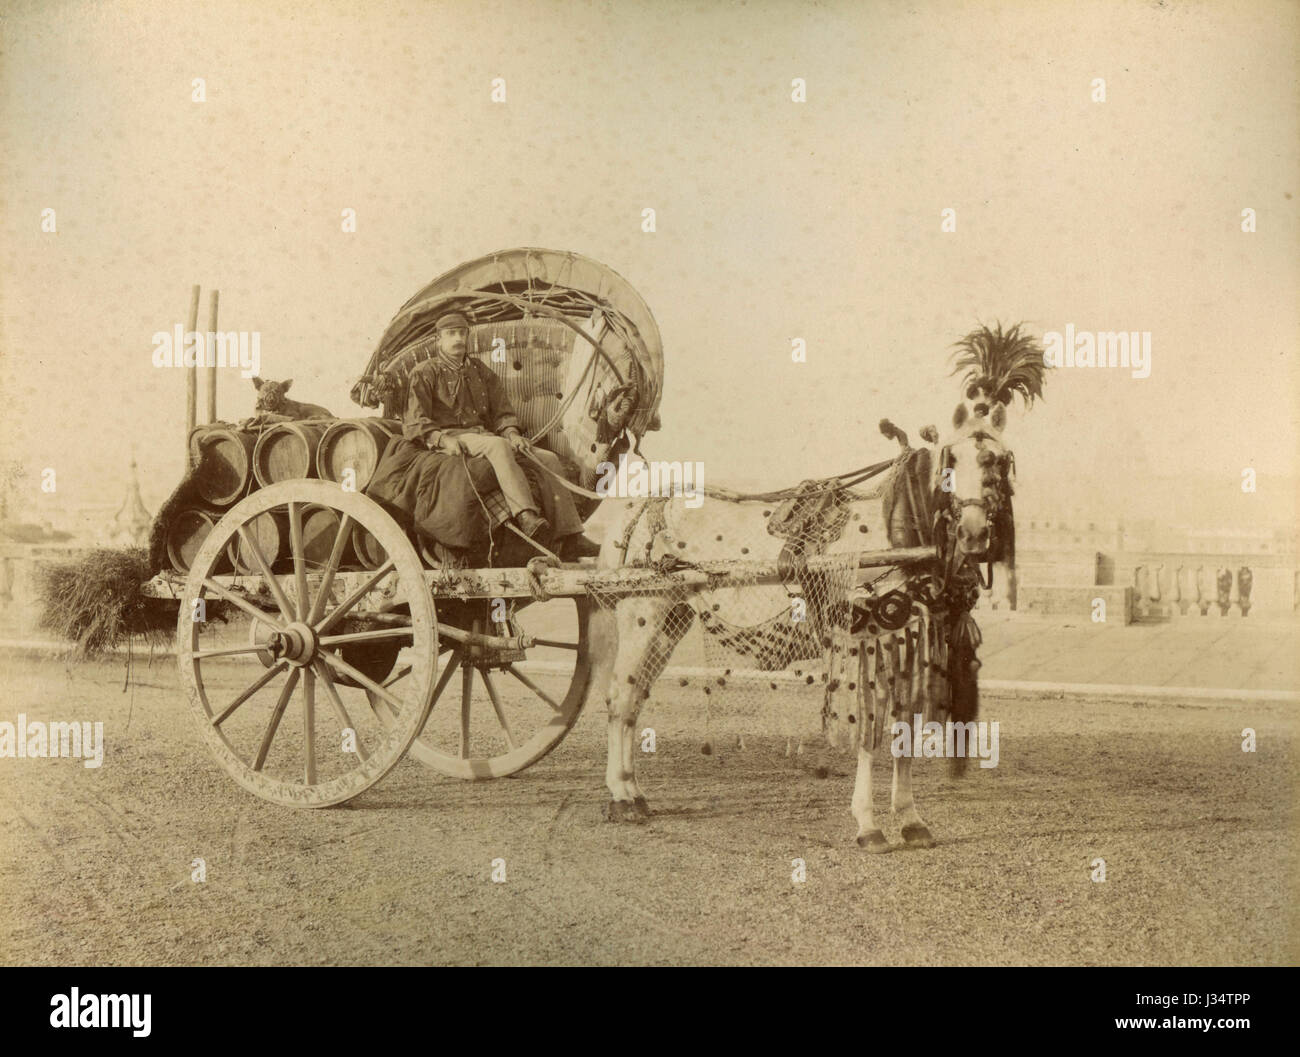 Roman Wine Wagon, Italy ca. 1880 Stock Photo